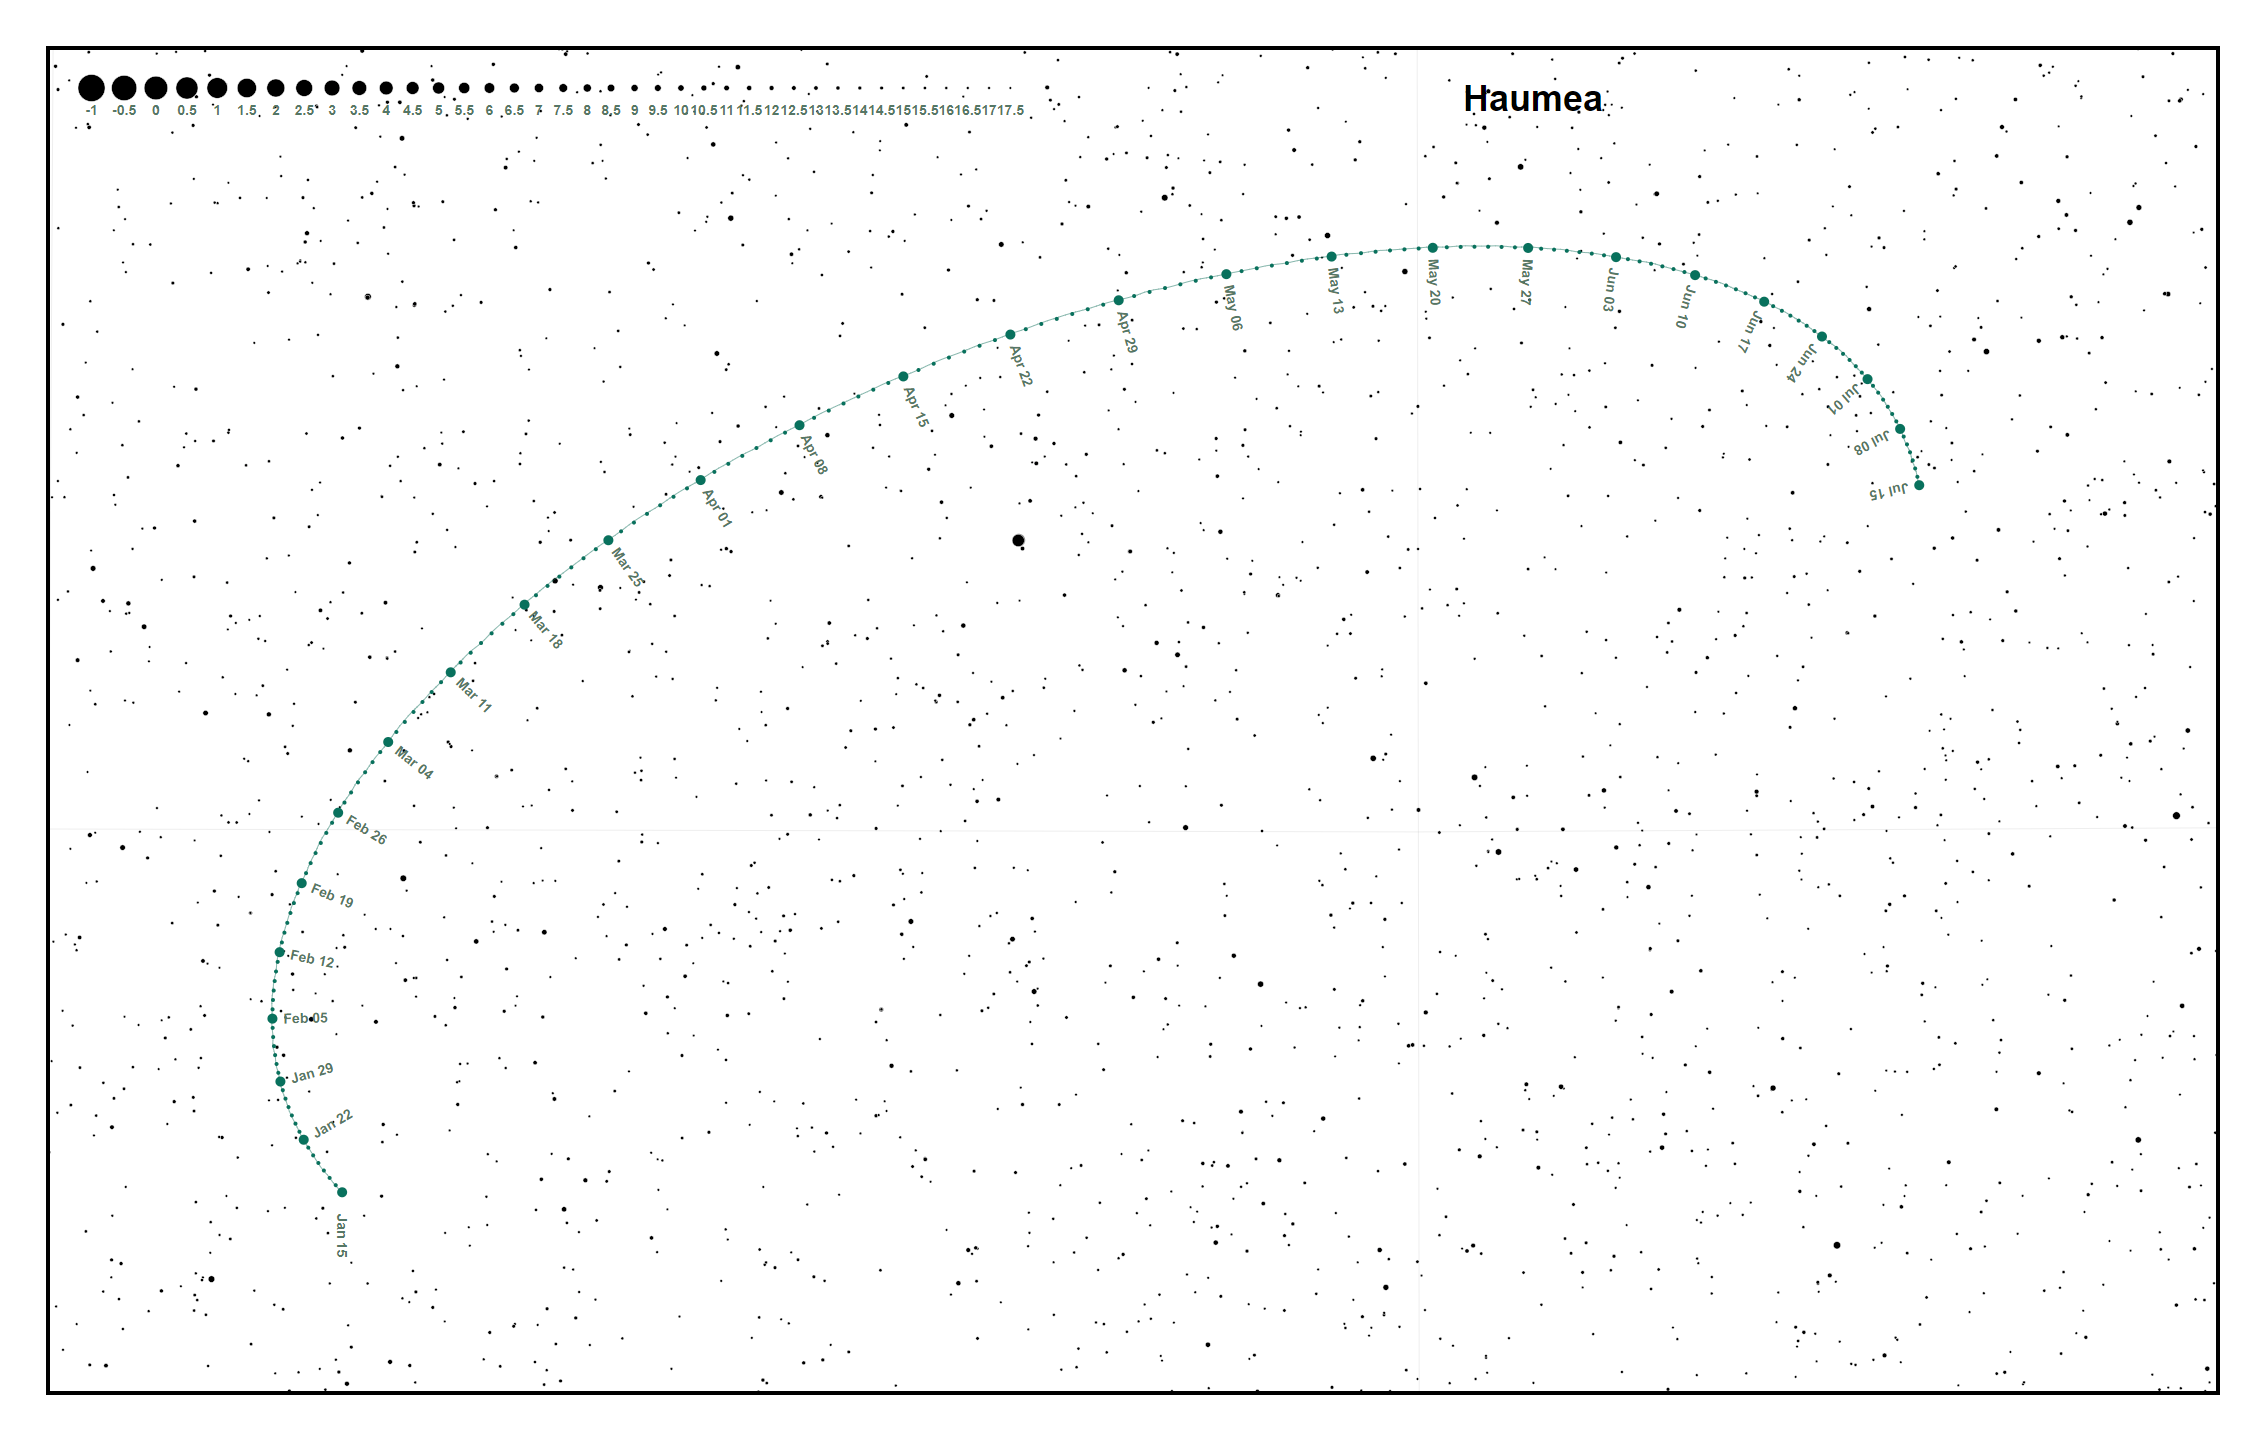 Haumea location chart